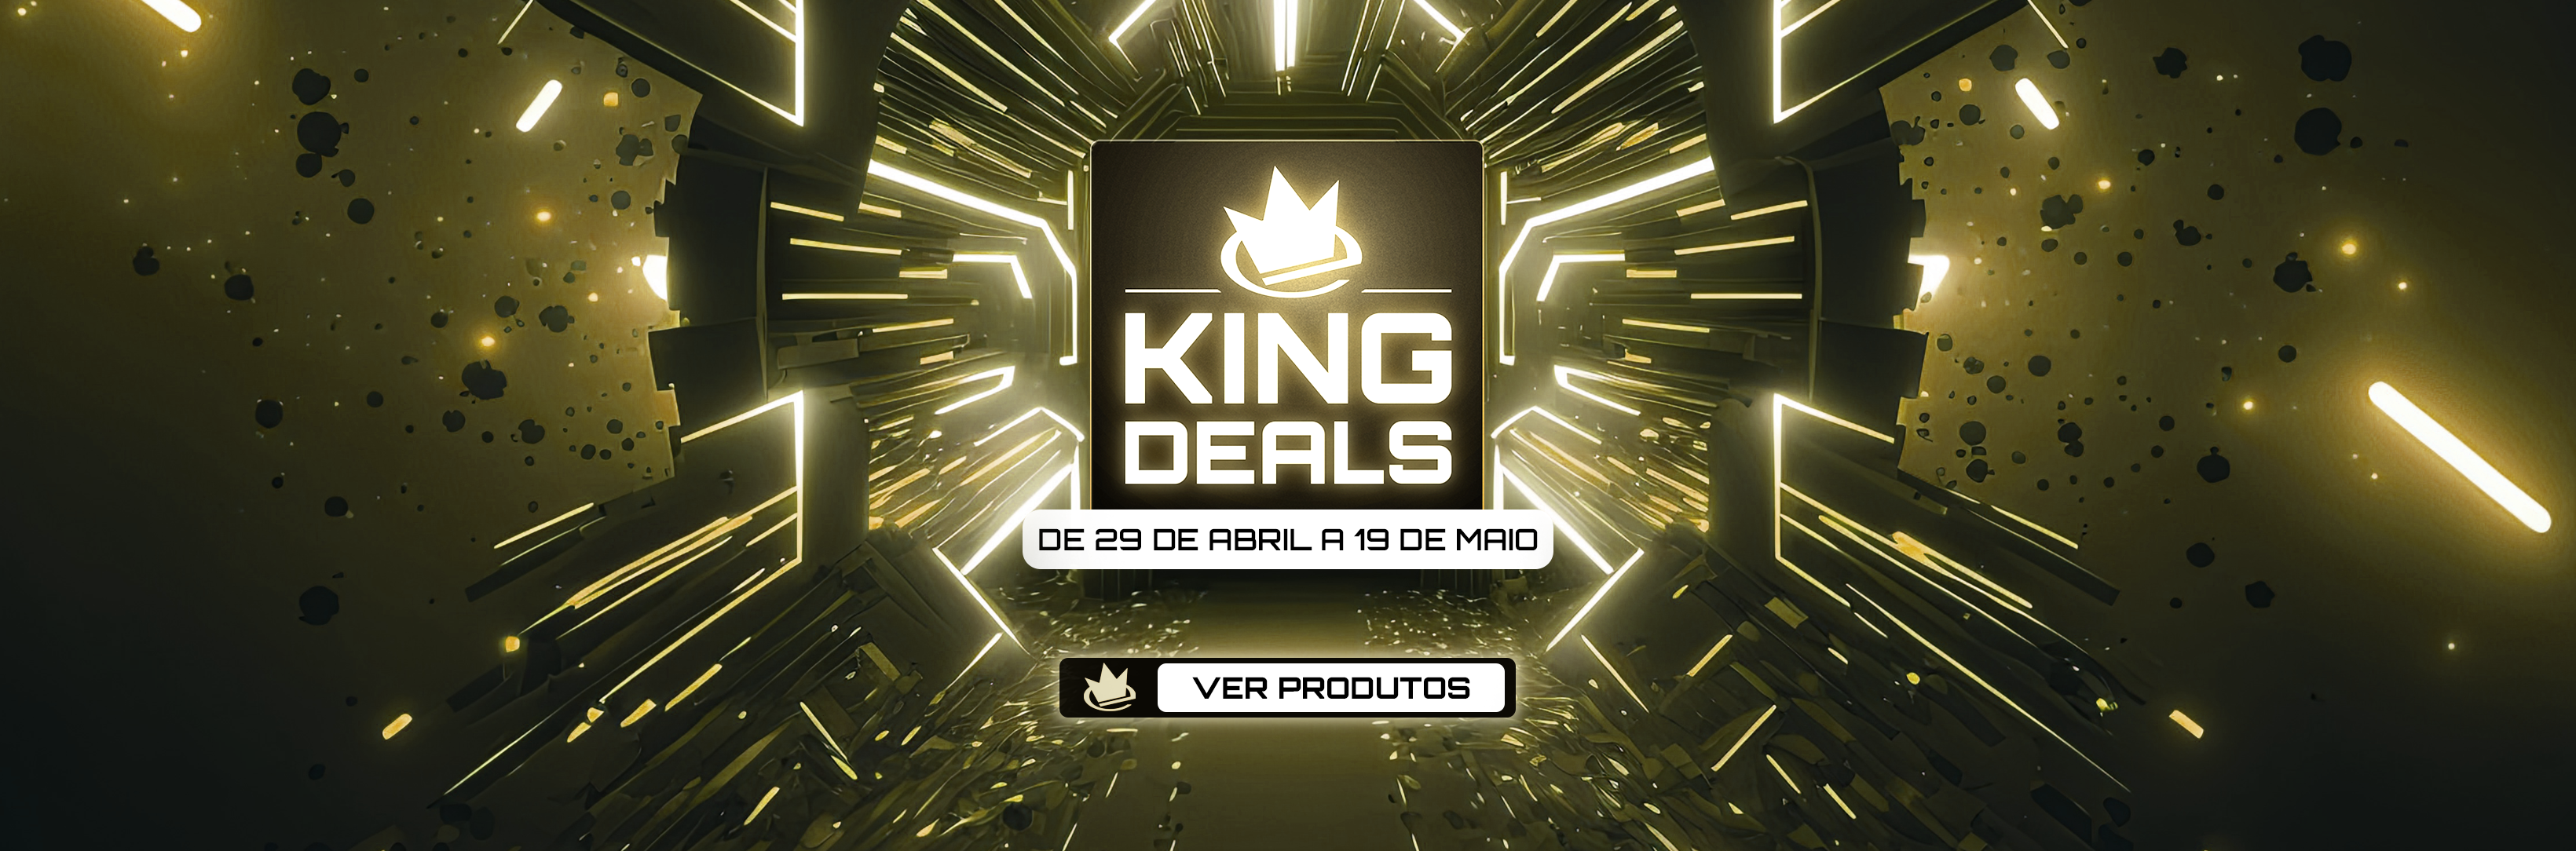 Nova campanha de descontos King Deals